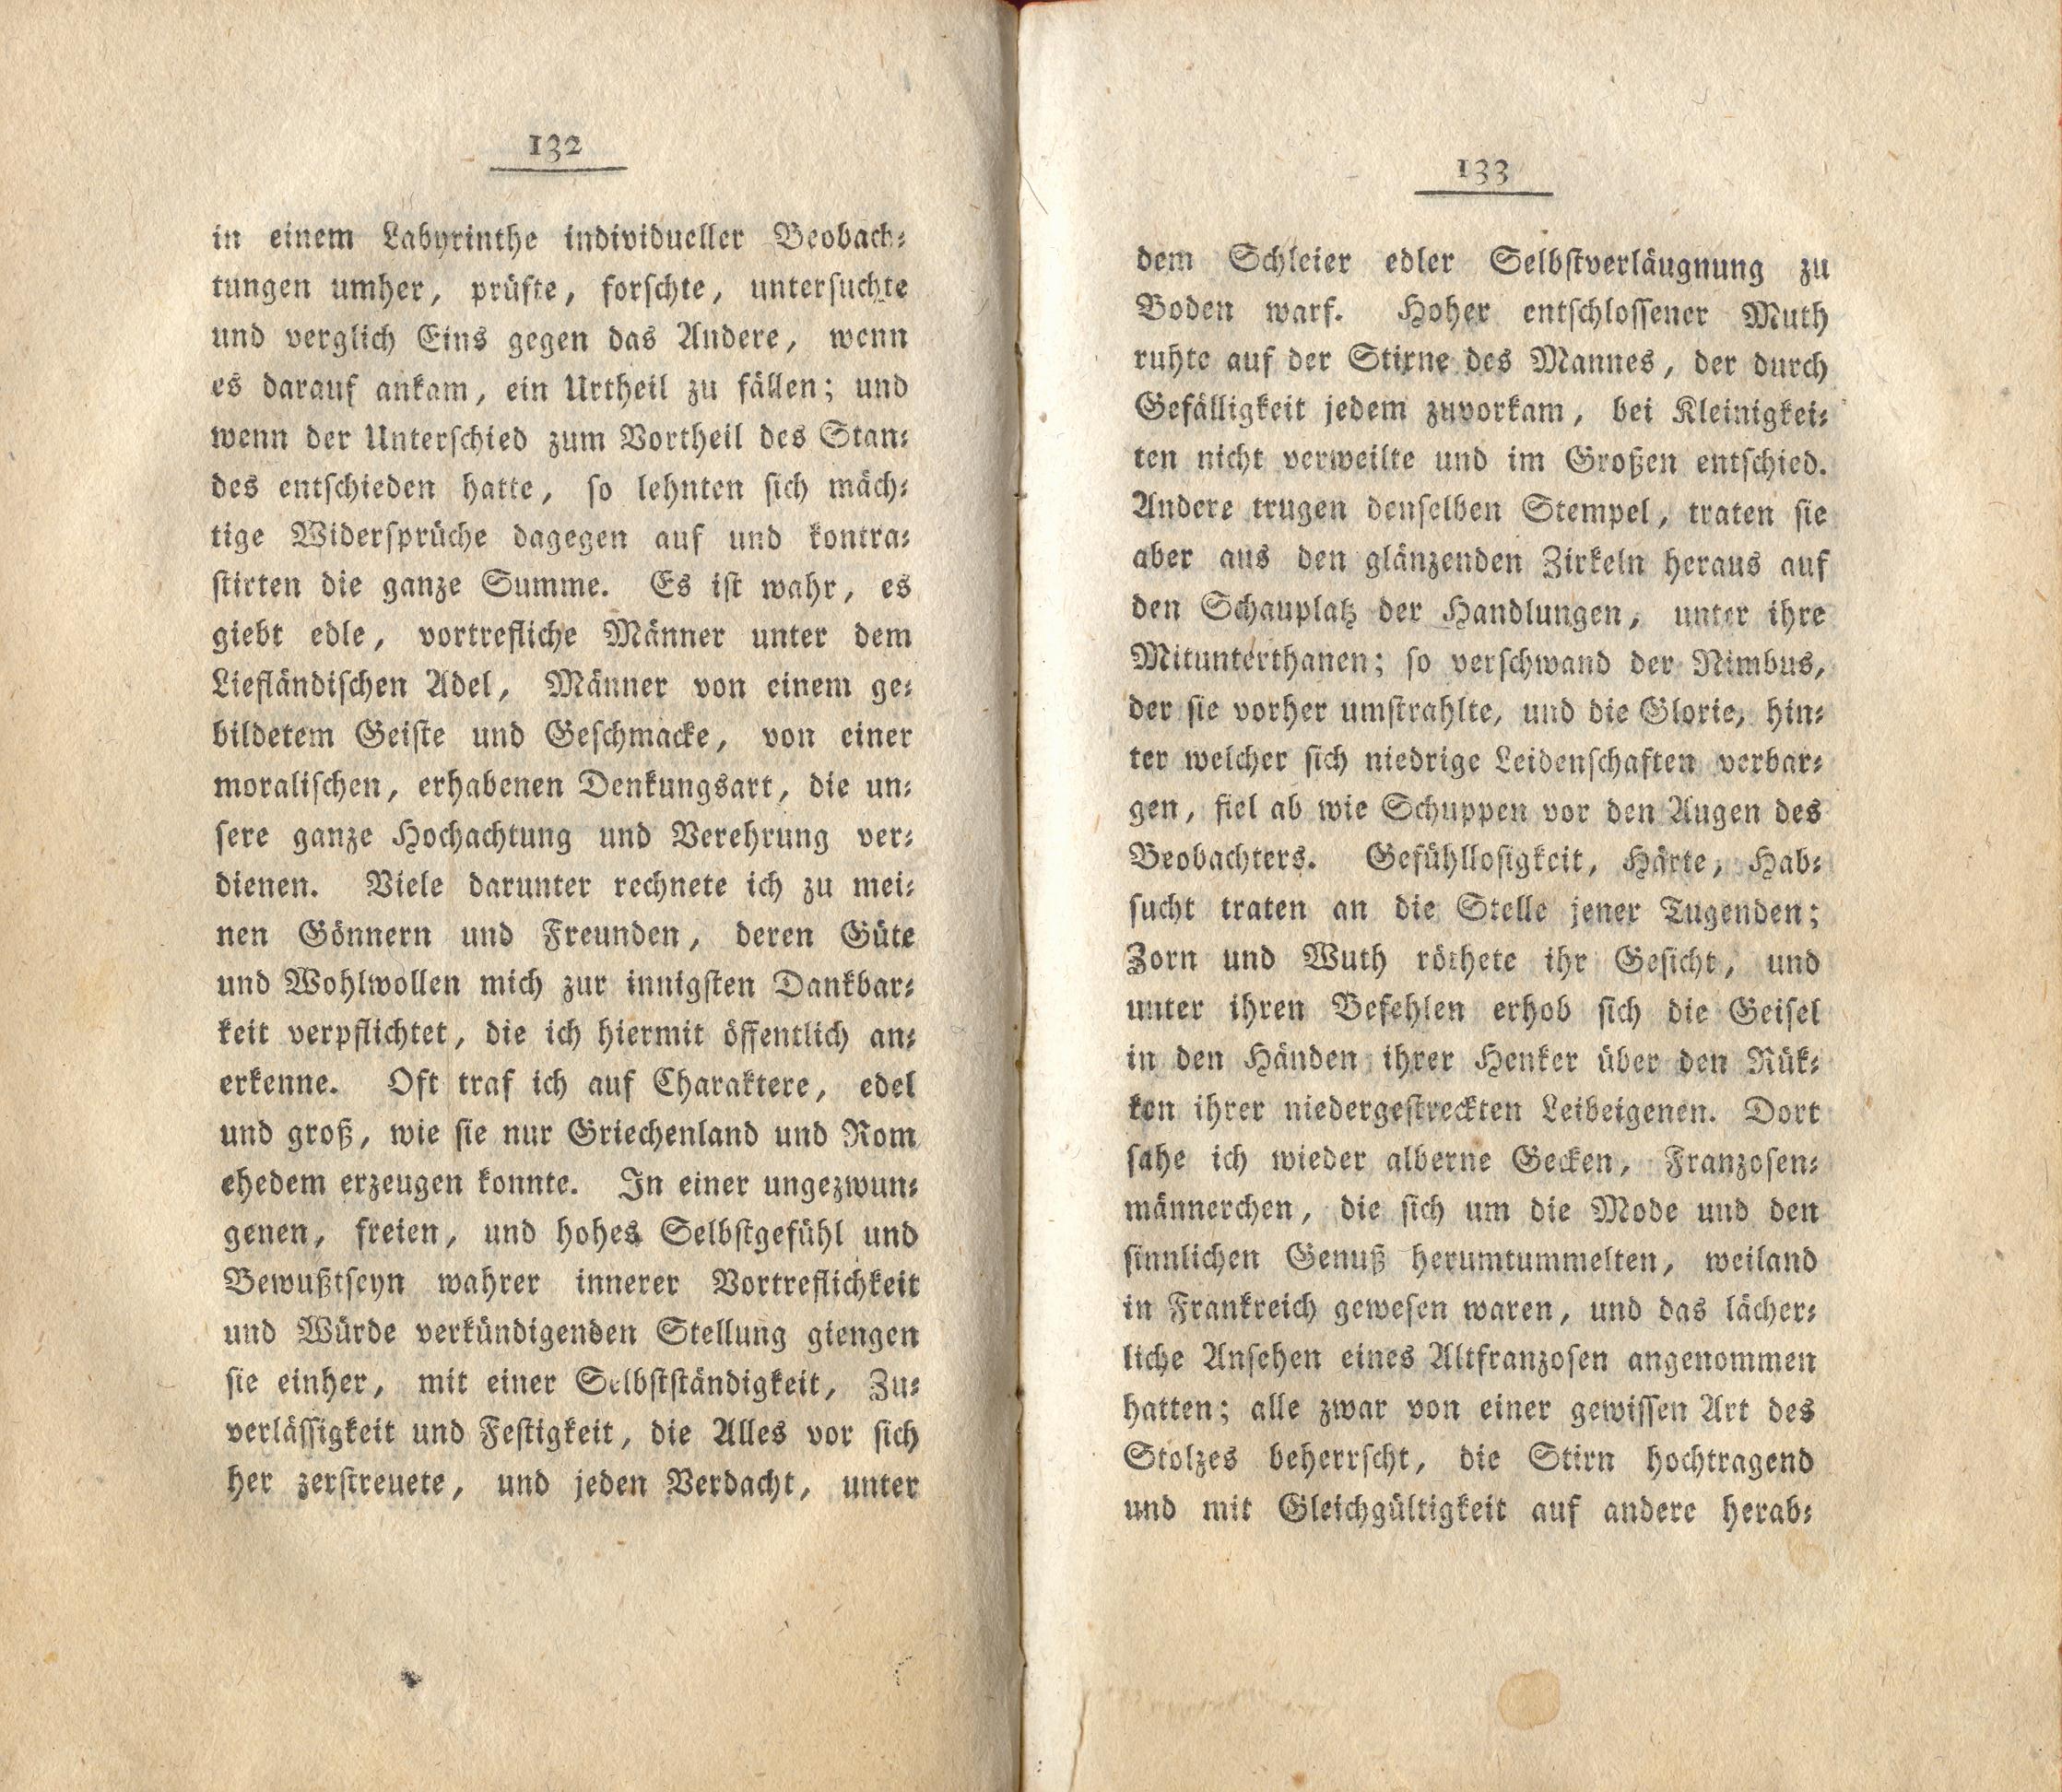 Neue Pittoresken aus Norden (1805) | 73. (132-133) Main body of text